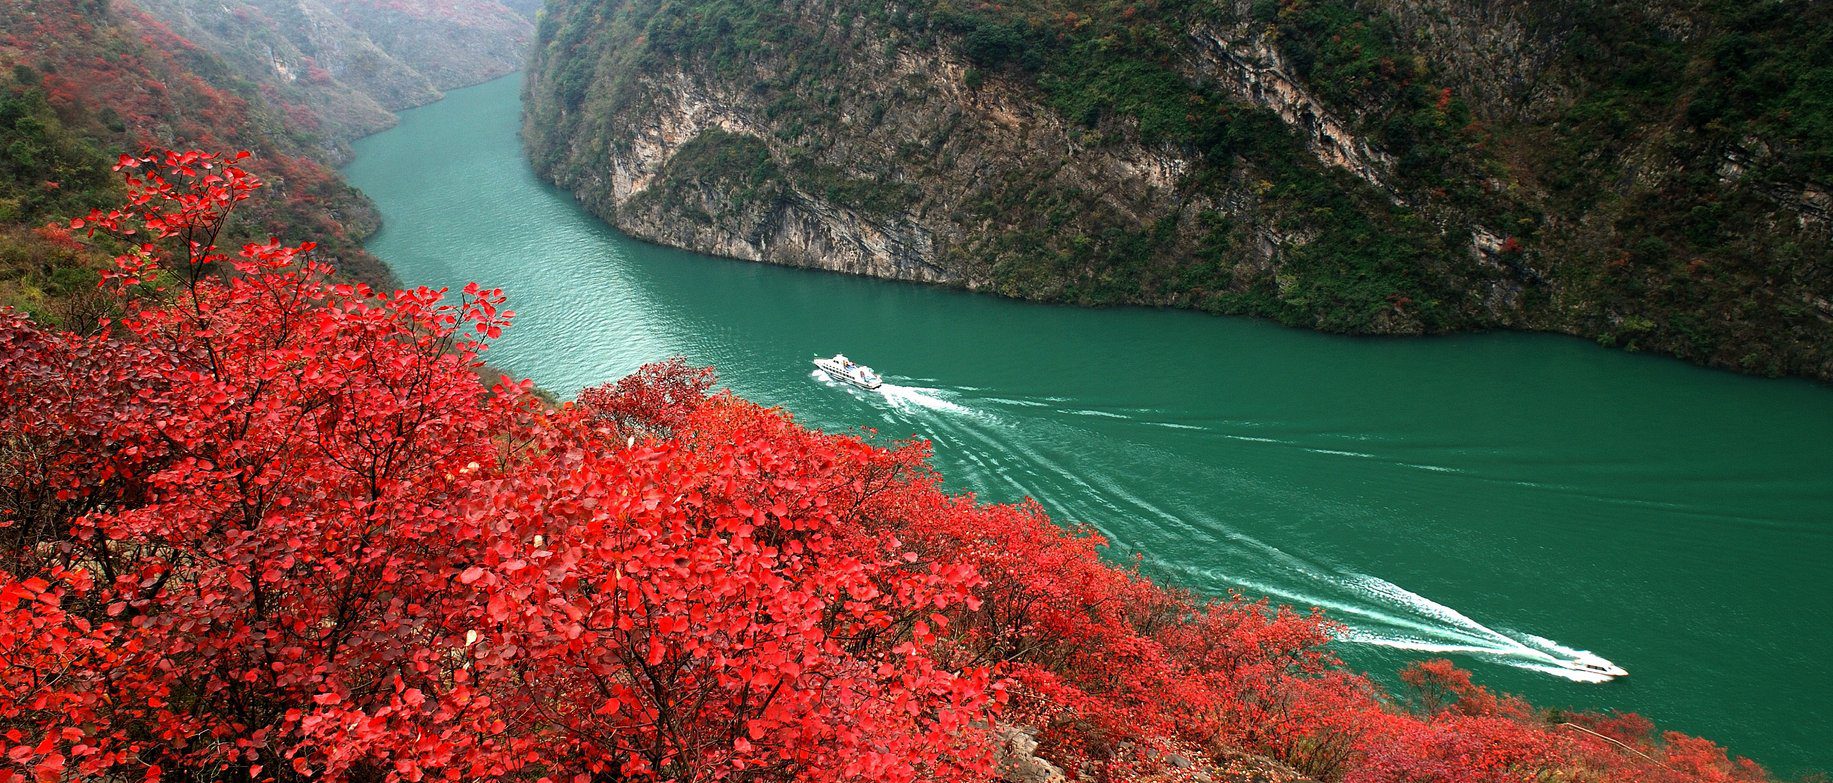 Resultado de imagem para cruzeiro pelo Rio Li Jiang